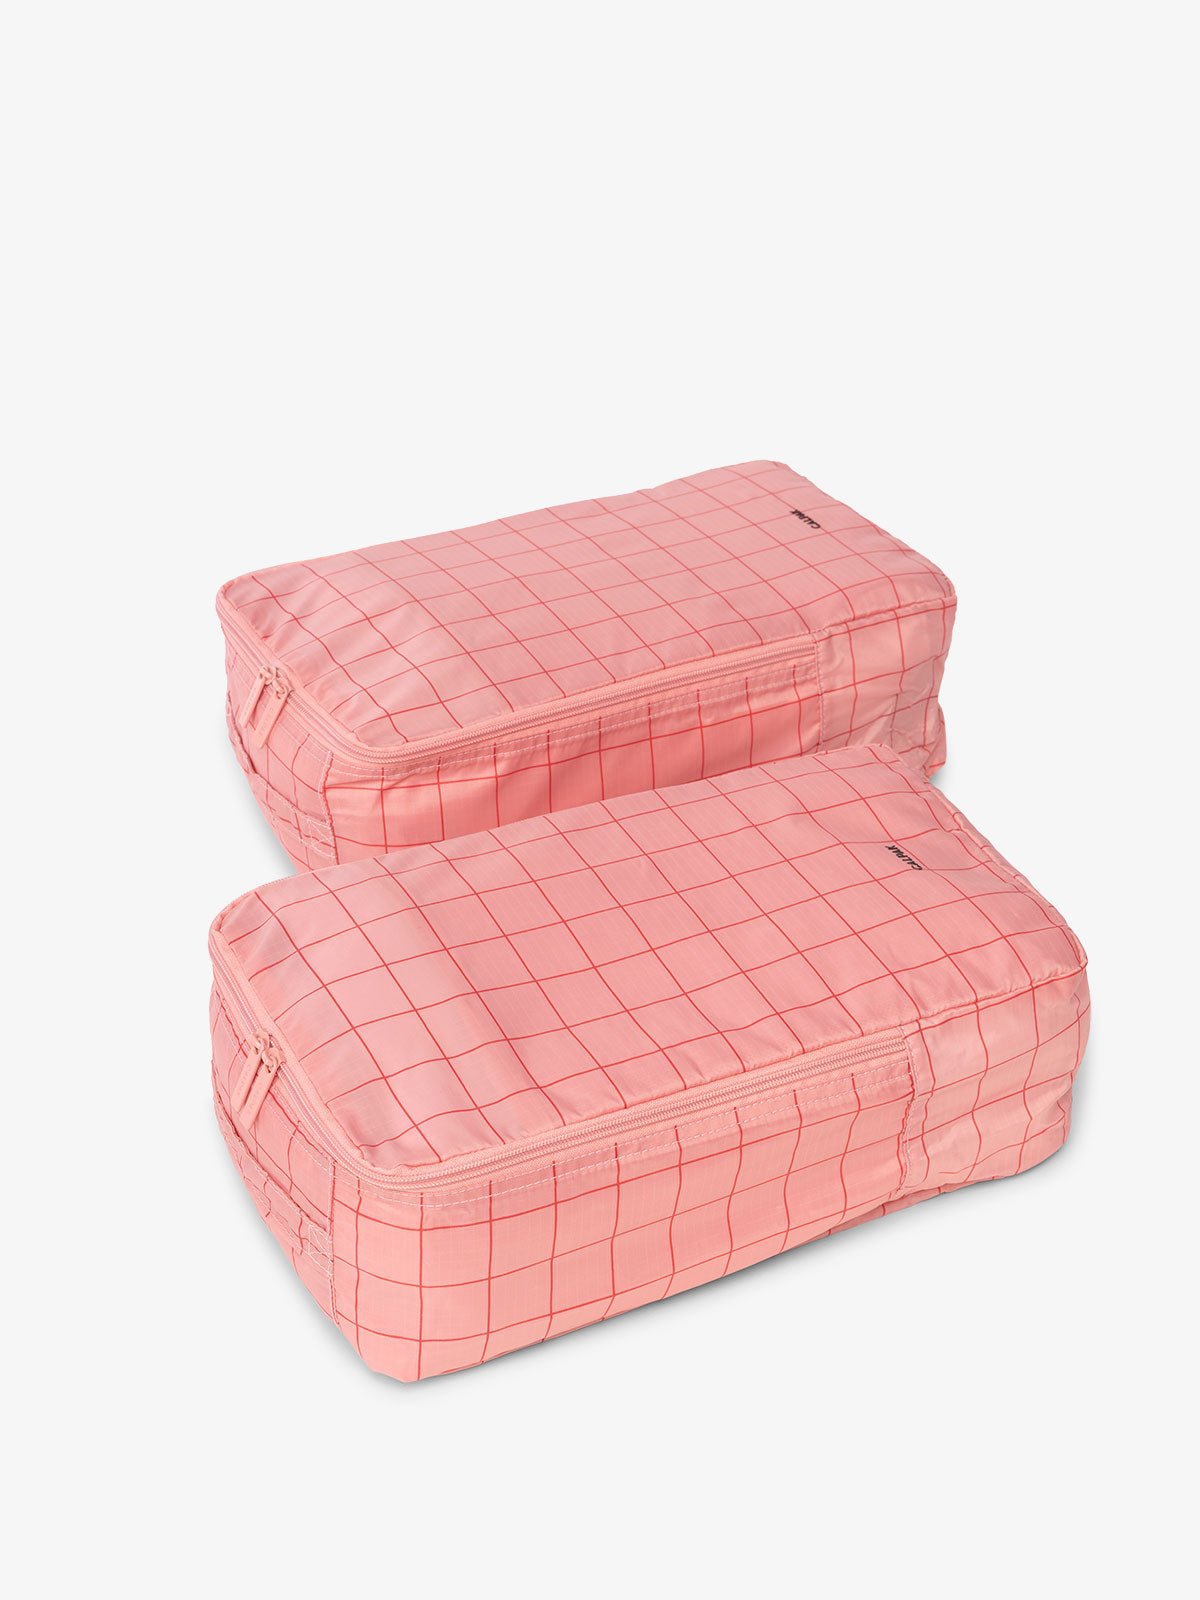 CALPAK Compakt shoe bag set in pink grid